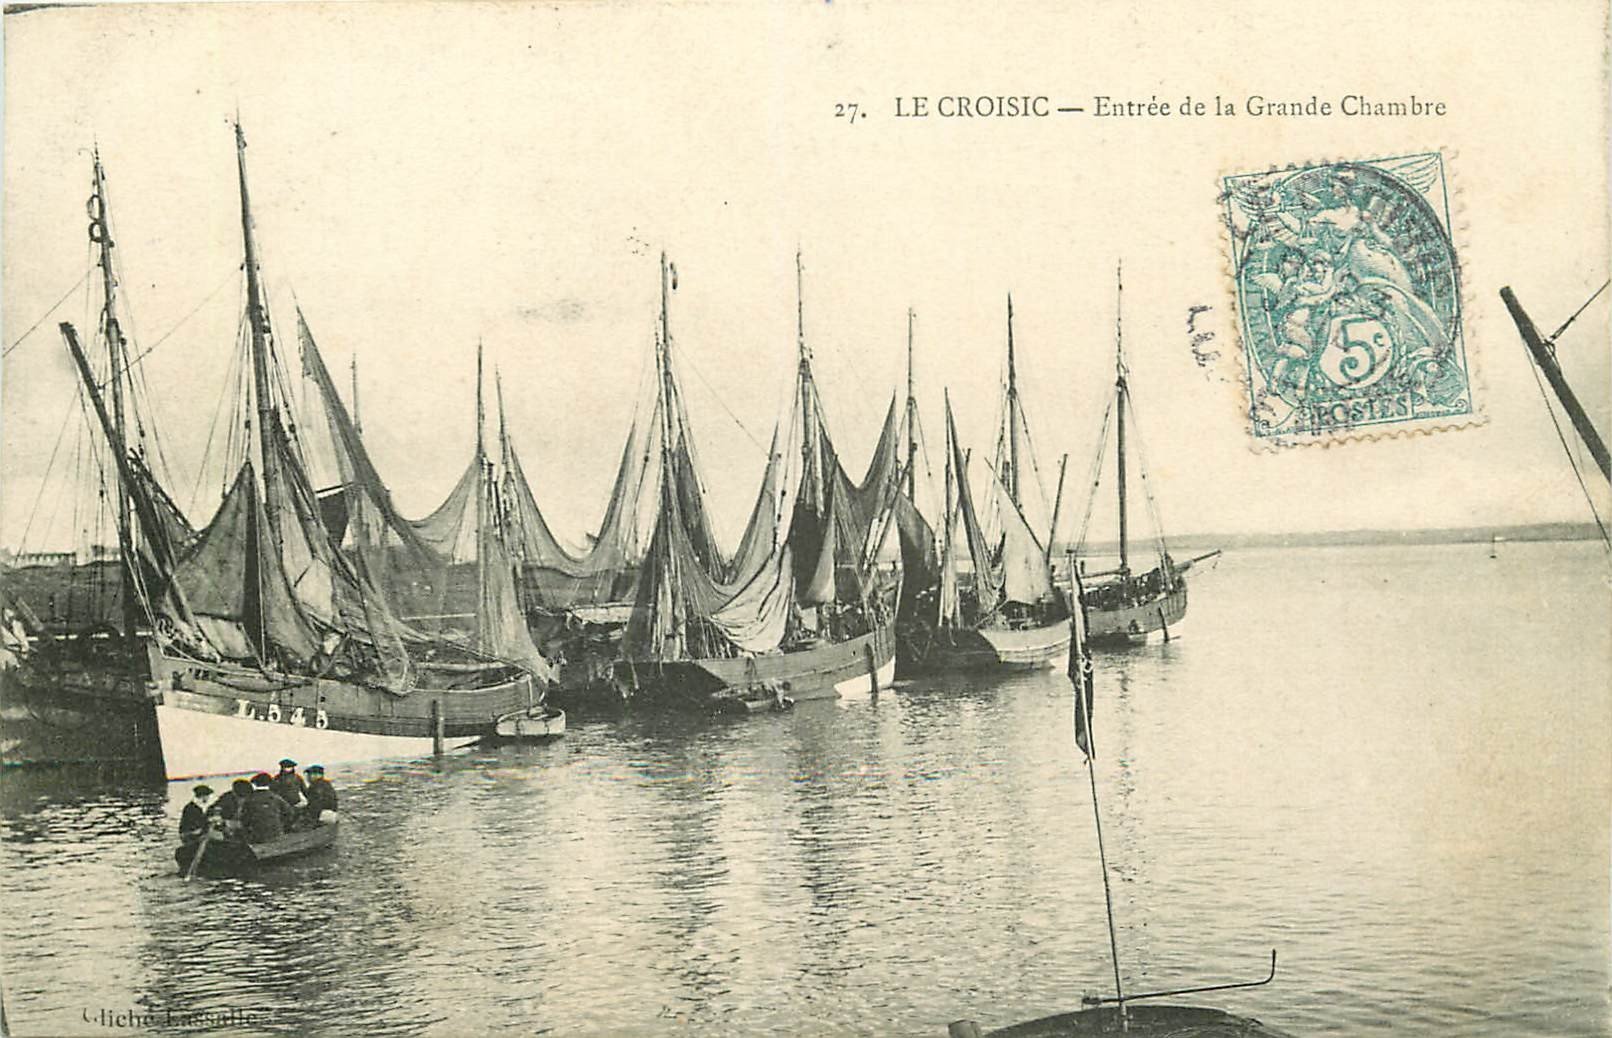 WW 44 LE CROISIC. Bateaux de Pêche à l'Entrée de la Grande Chambre vers 1905